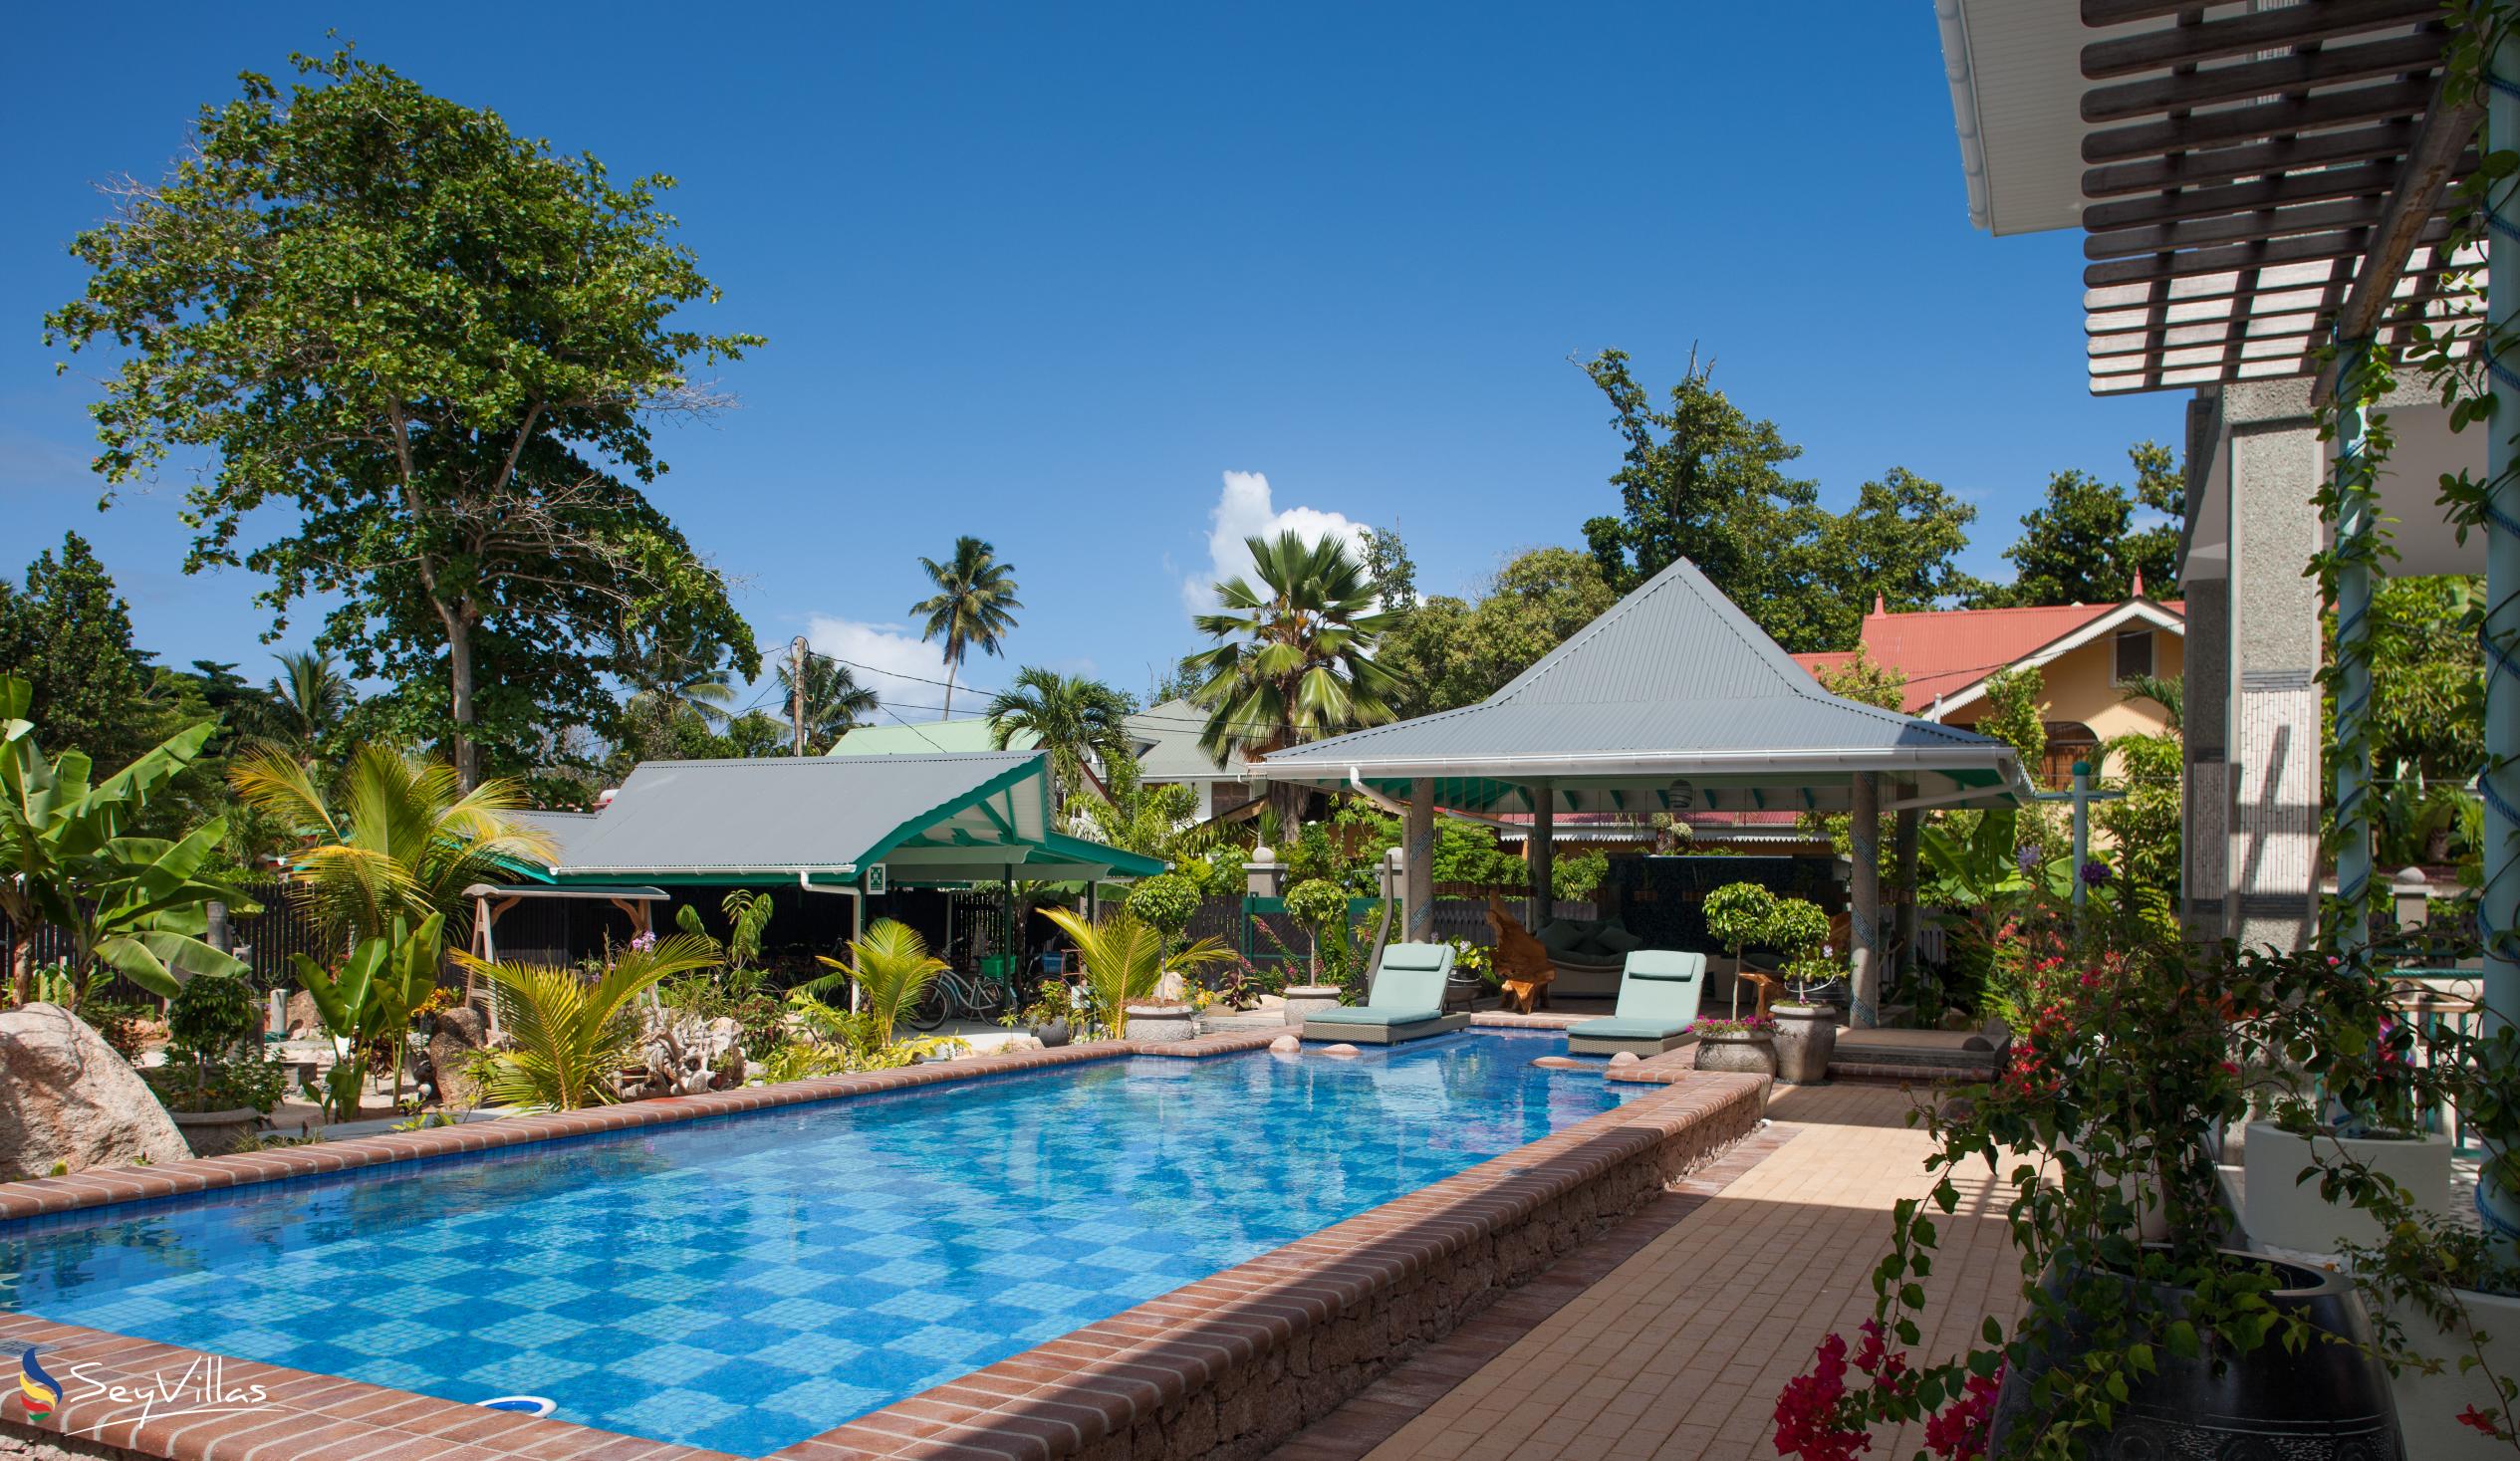 Foto 17: Villa Charme De L'ile - Aussenbereich - La Digue (Seychellen)